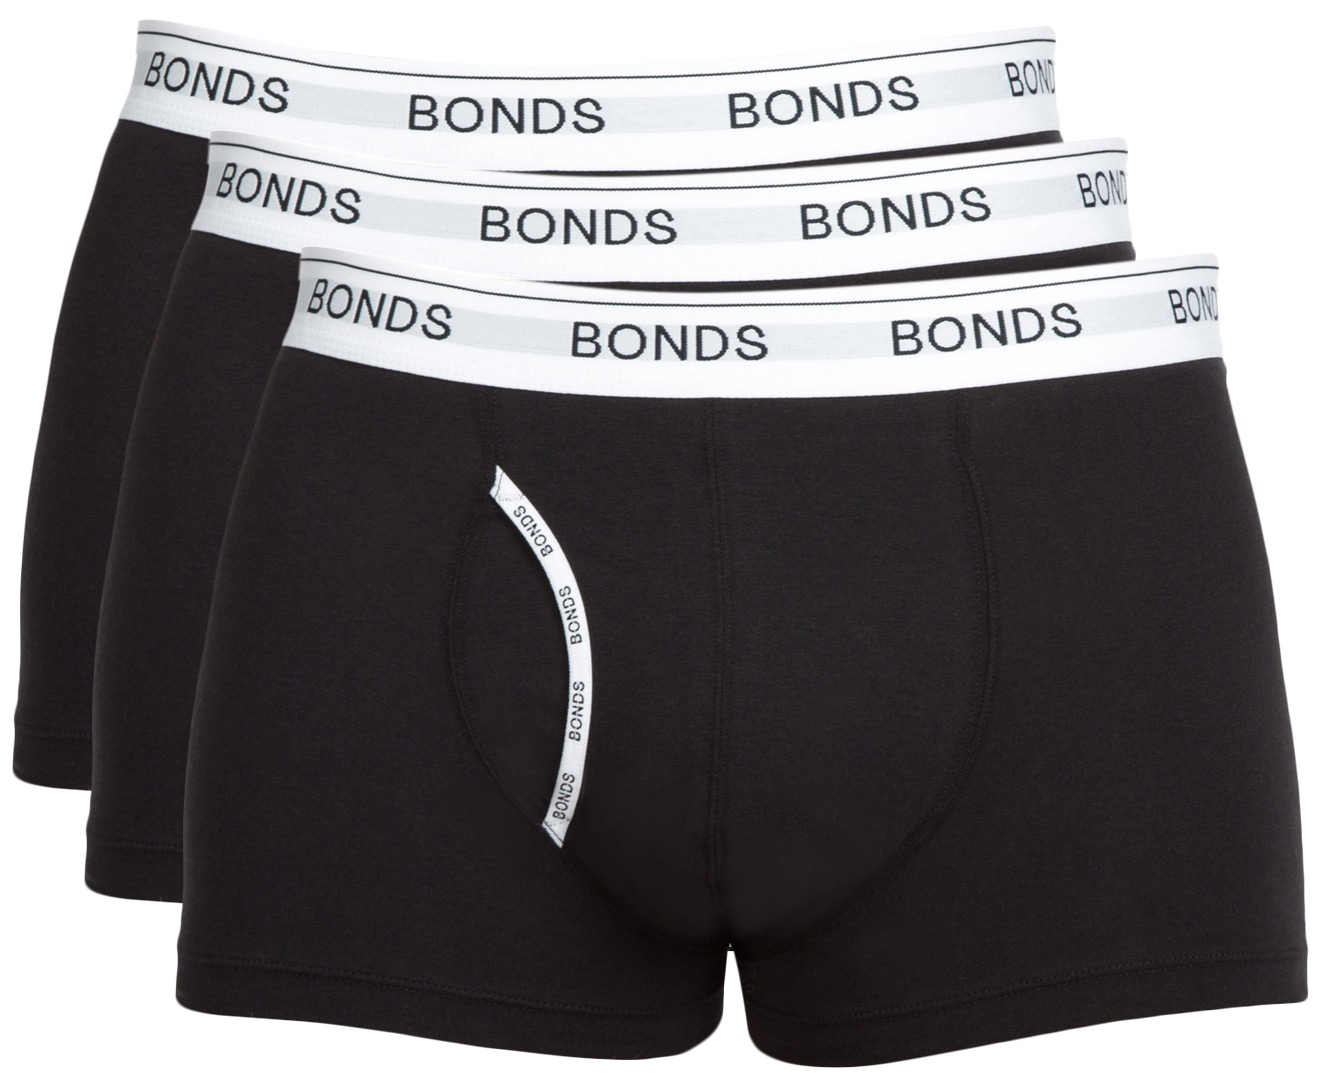 bonds mens underwear